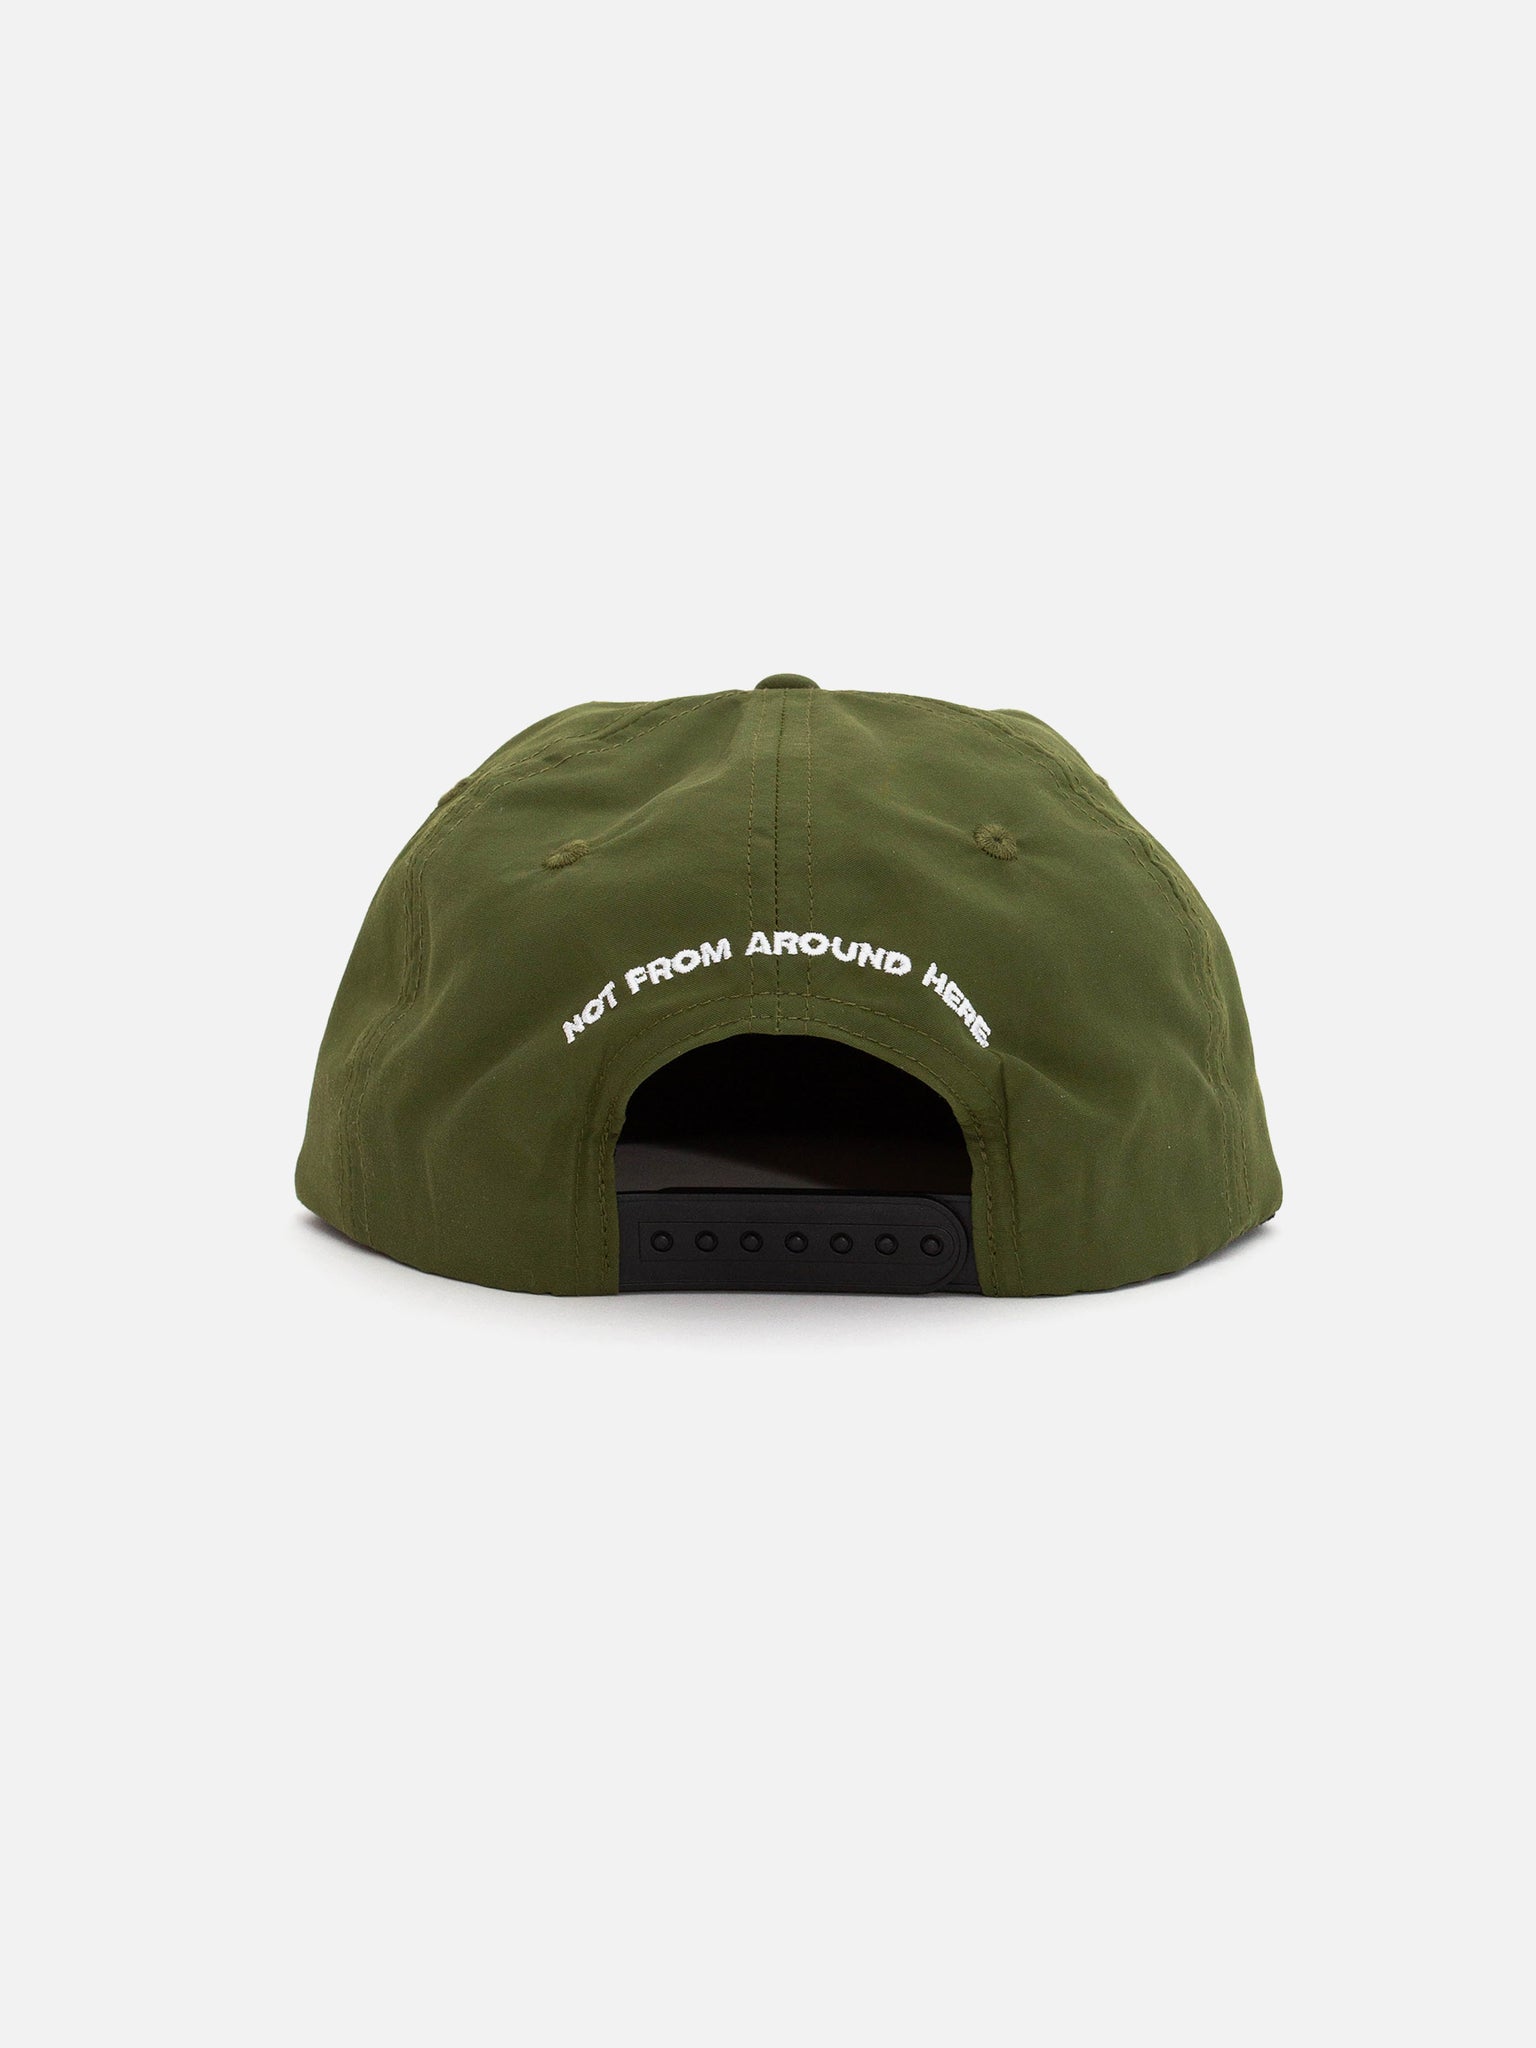 Spacebound™ Cap Green